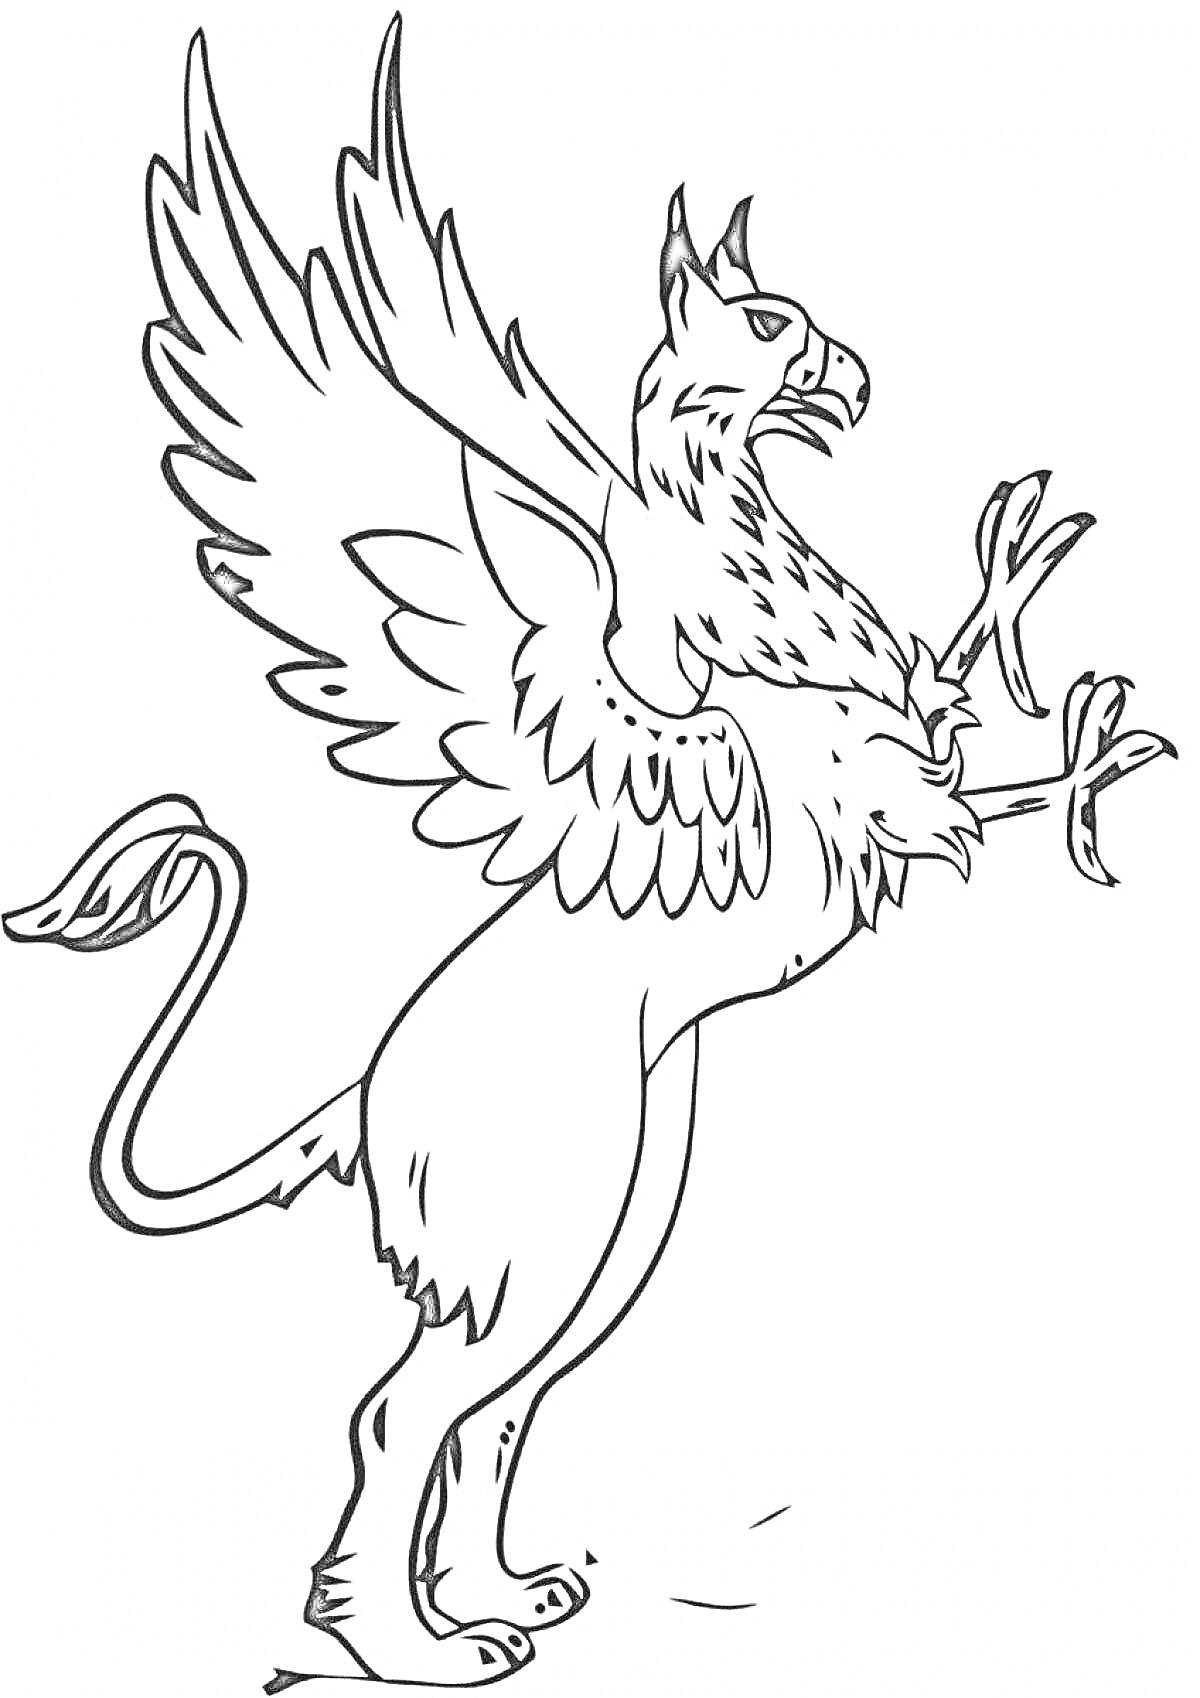 Грифон с распахнутыми крыльями и поднятыми лапами